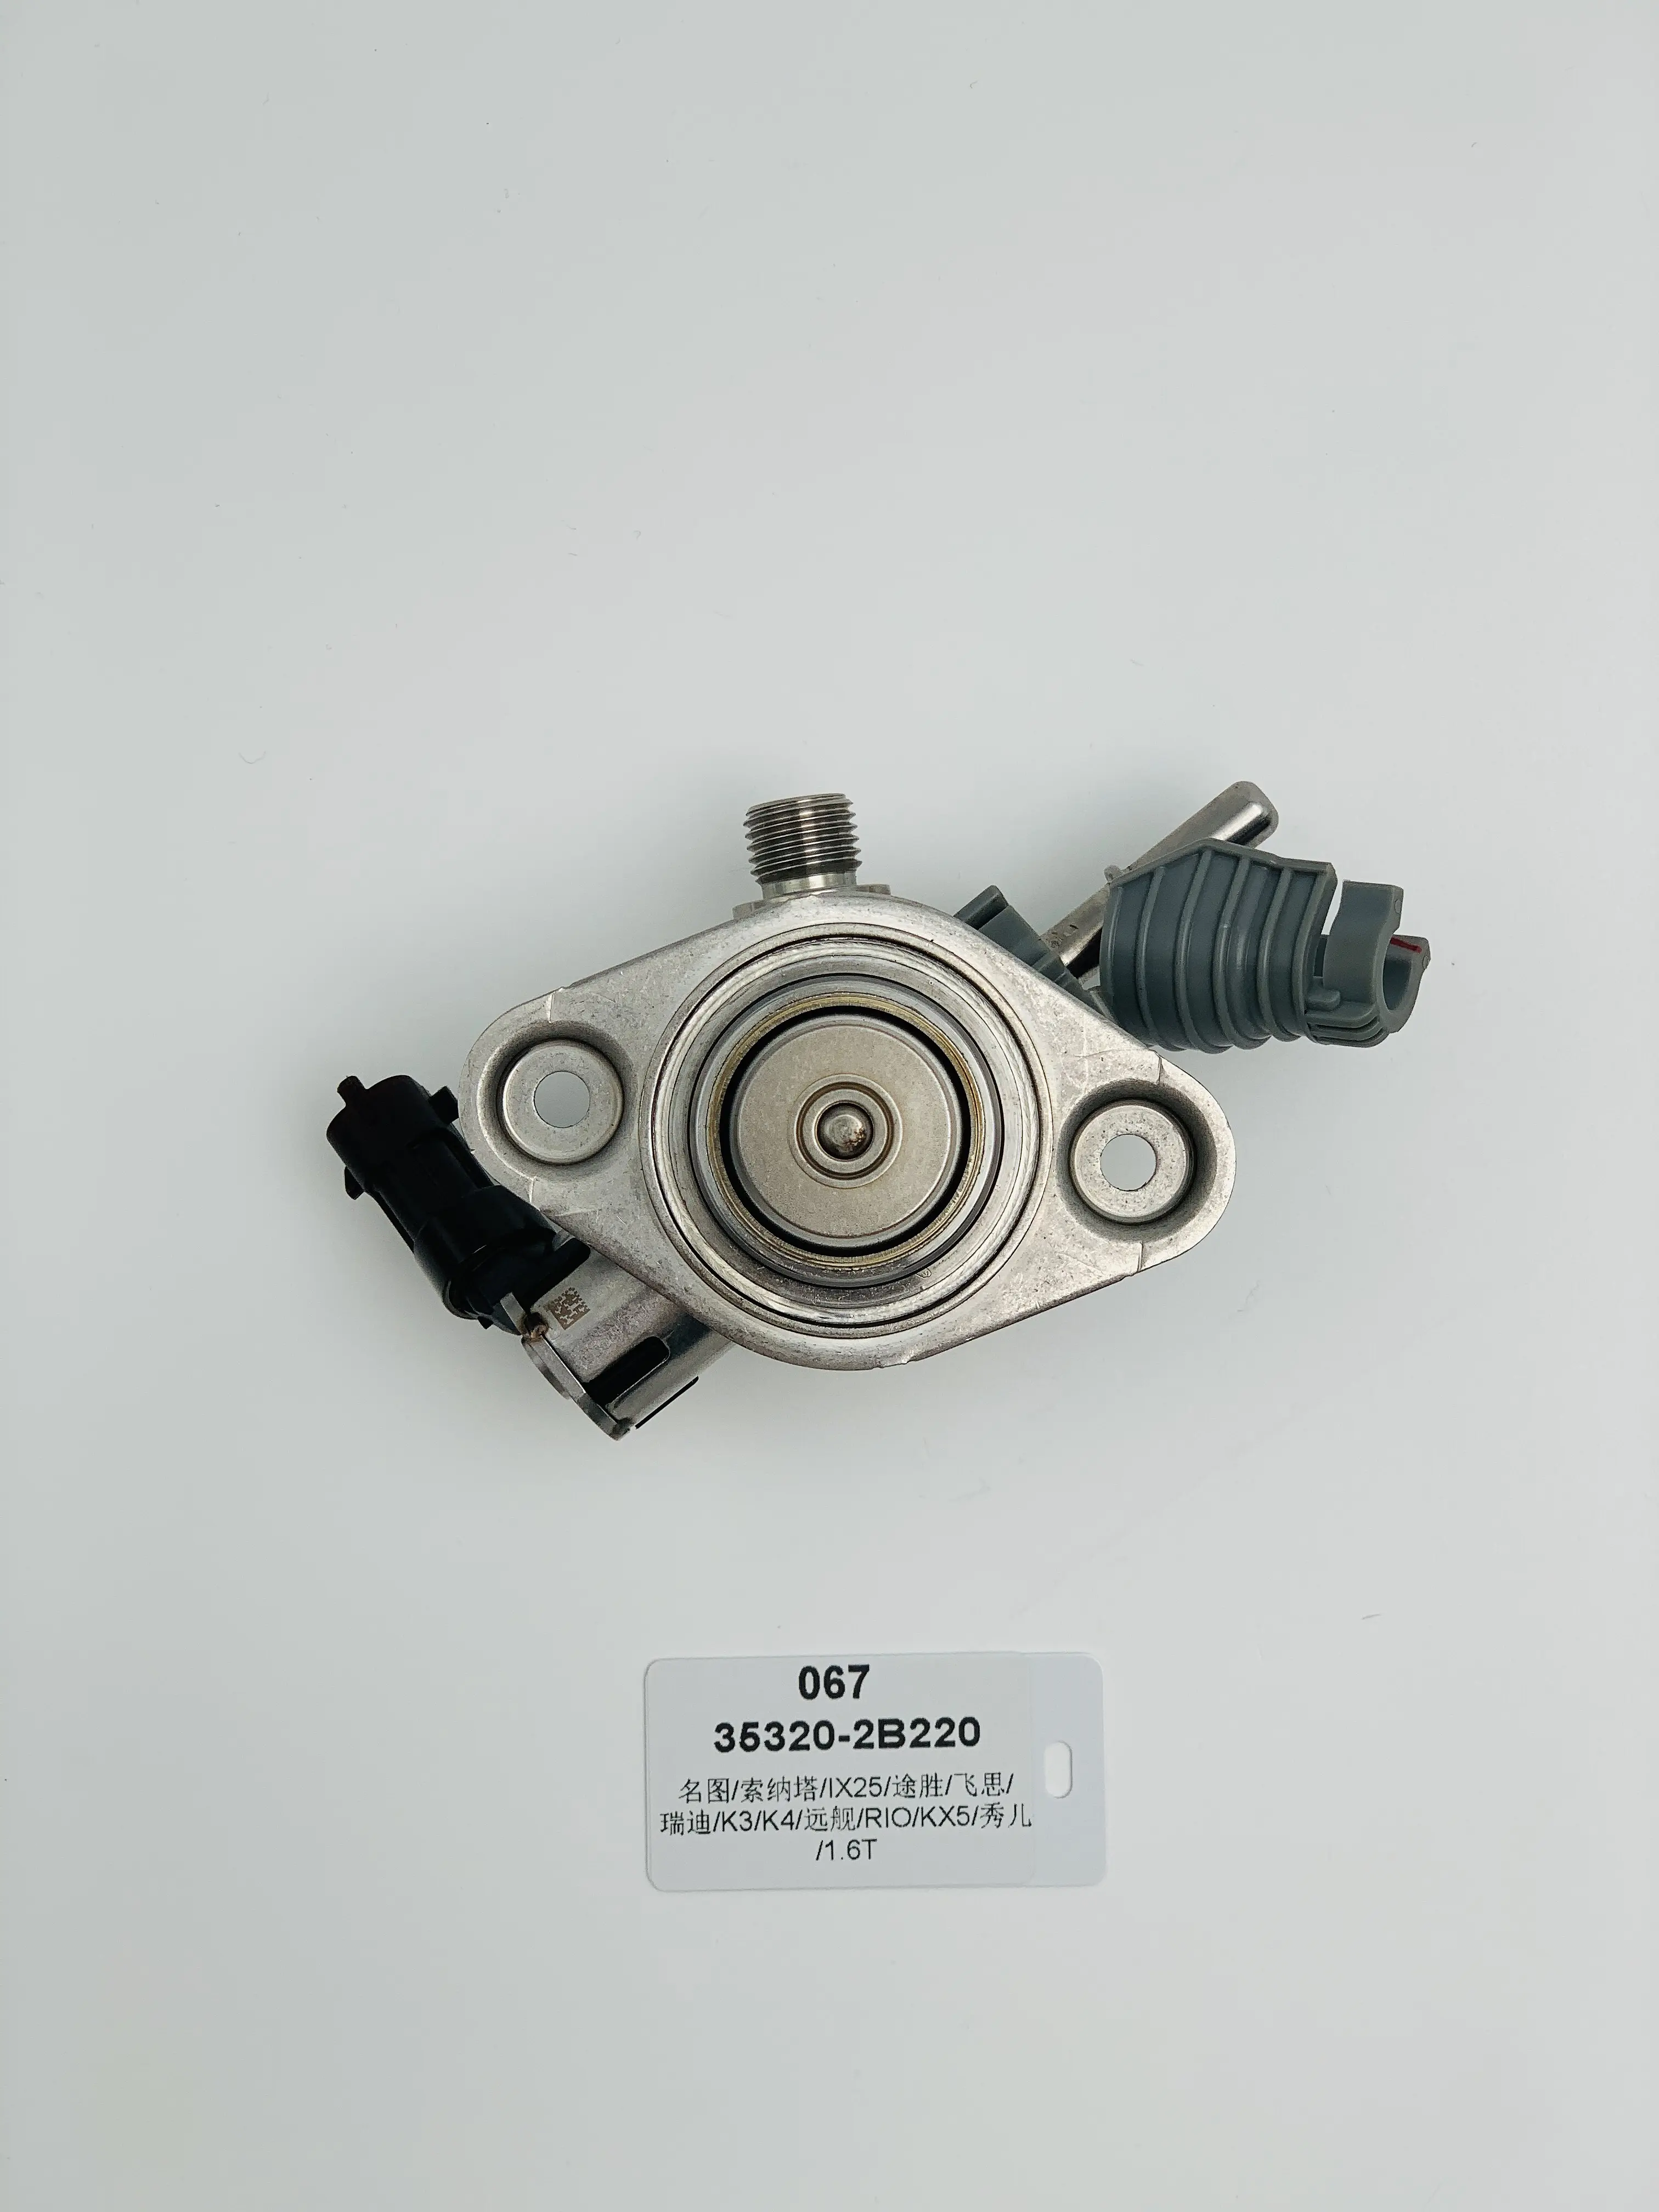 35320-2B220 High Pressure Pump for Hyundai MISTRA Sonata IX25 Tucson Veloster Kia K3 K4 Optima